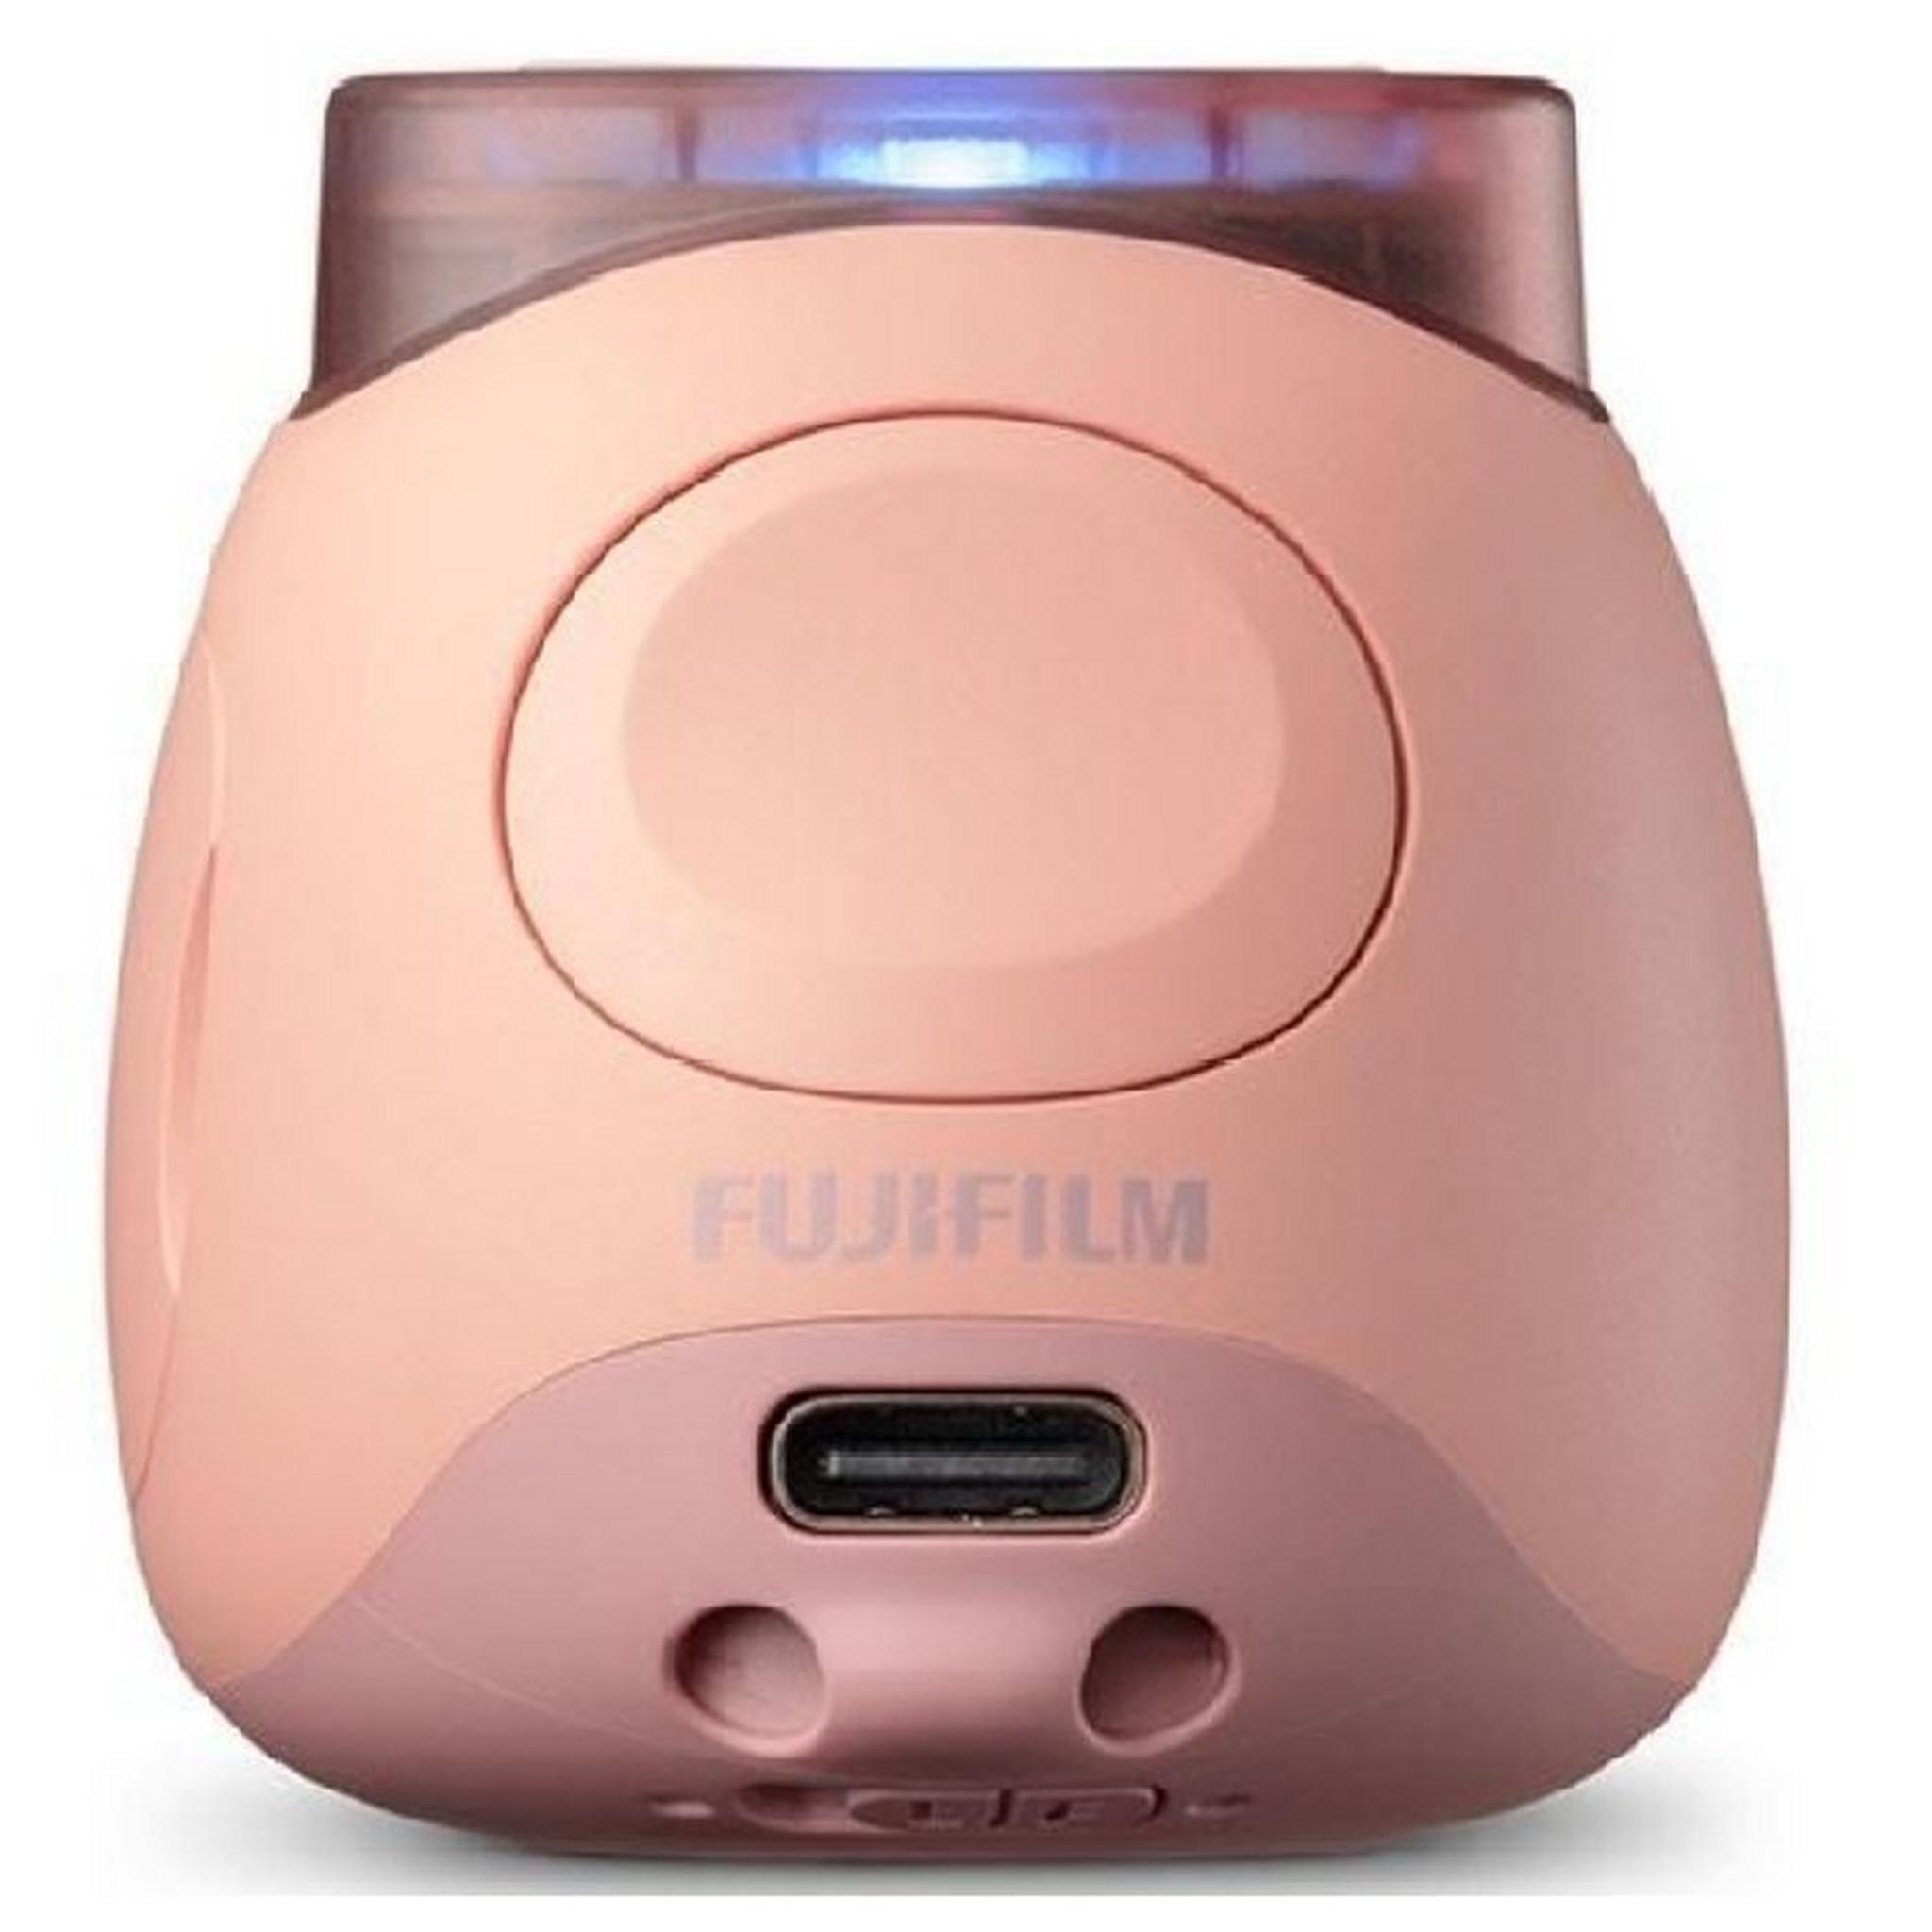 Fujifilm Instax PAL Digital Camera - Pink